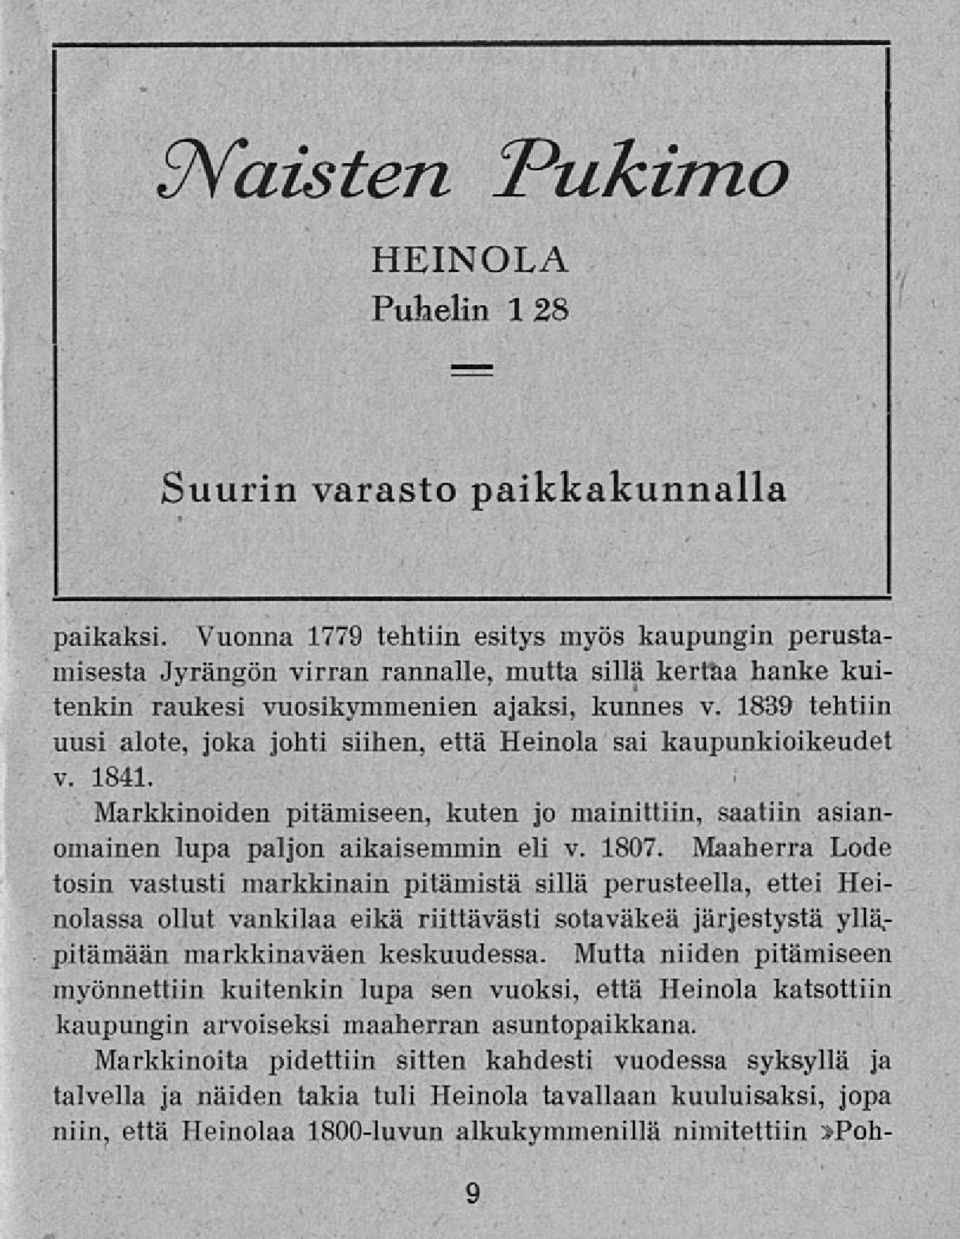 1839 tehtiin uusi alote, joka johti siihen, että Heinola sai kaupunkioikeudet v. 1841. Markkinoiden pitämiseen, kuten jo mainittiin, saatiin asianomainen lupa paljon aikaisemmin eli v. 1807.